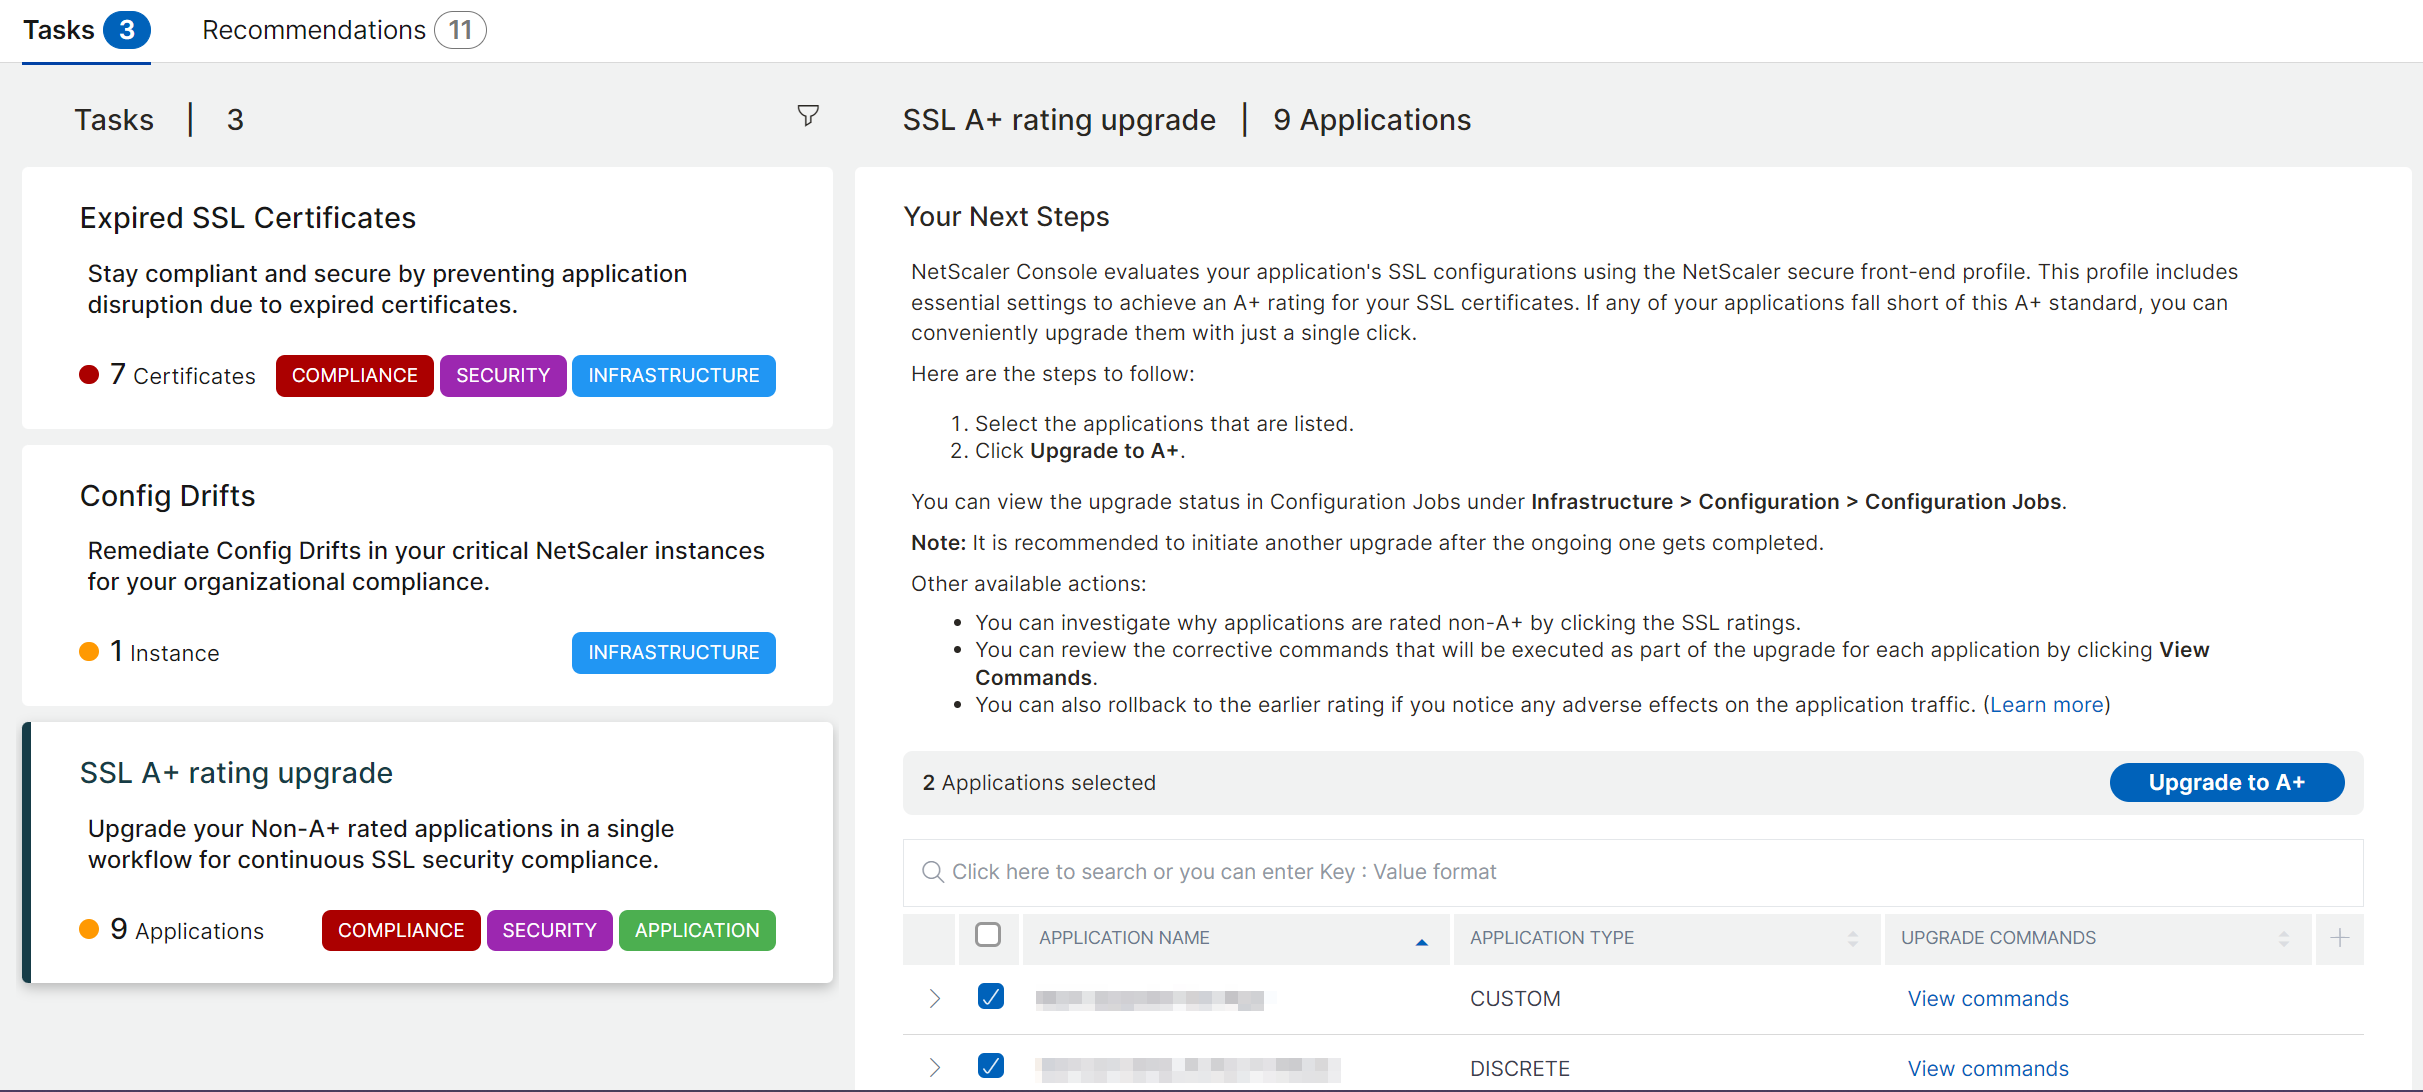 SSL A+ rating upgrade